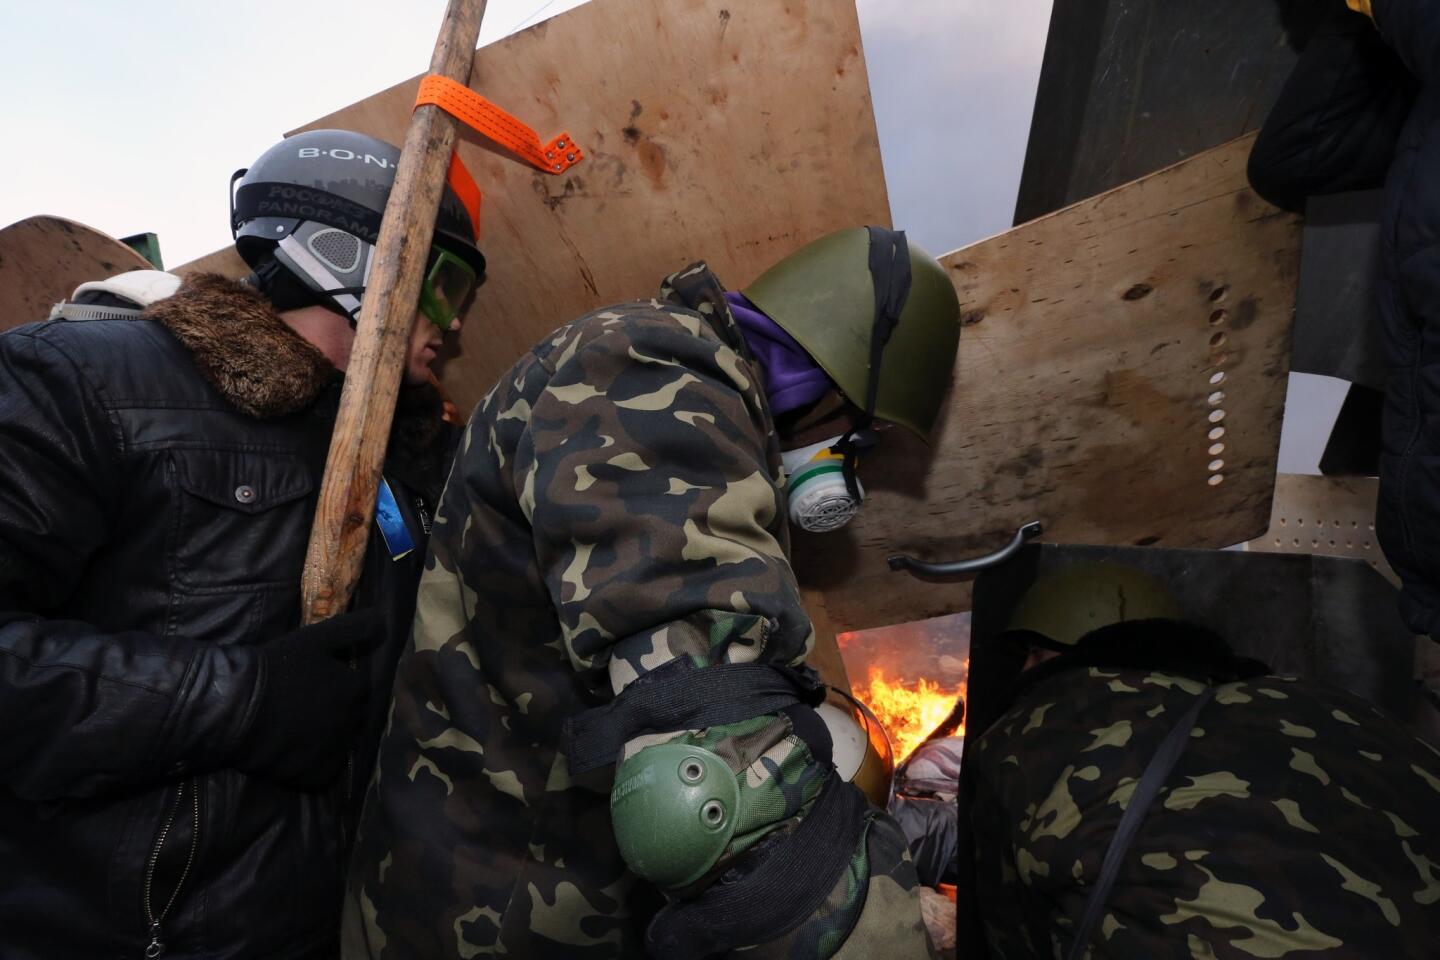 Deadly violence in Kiev, Ukraine